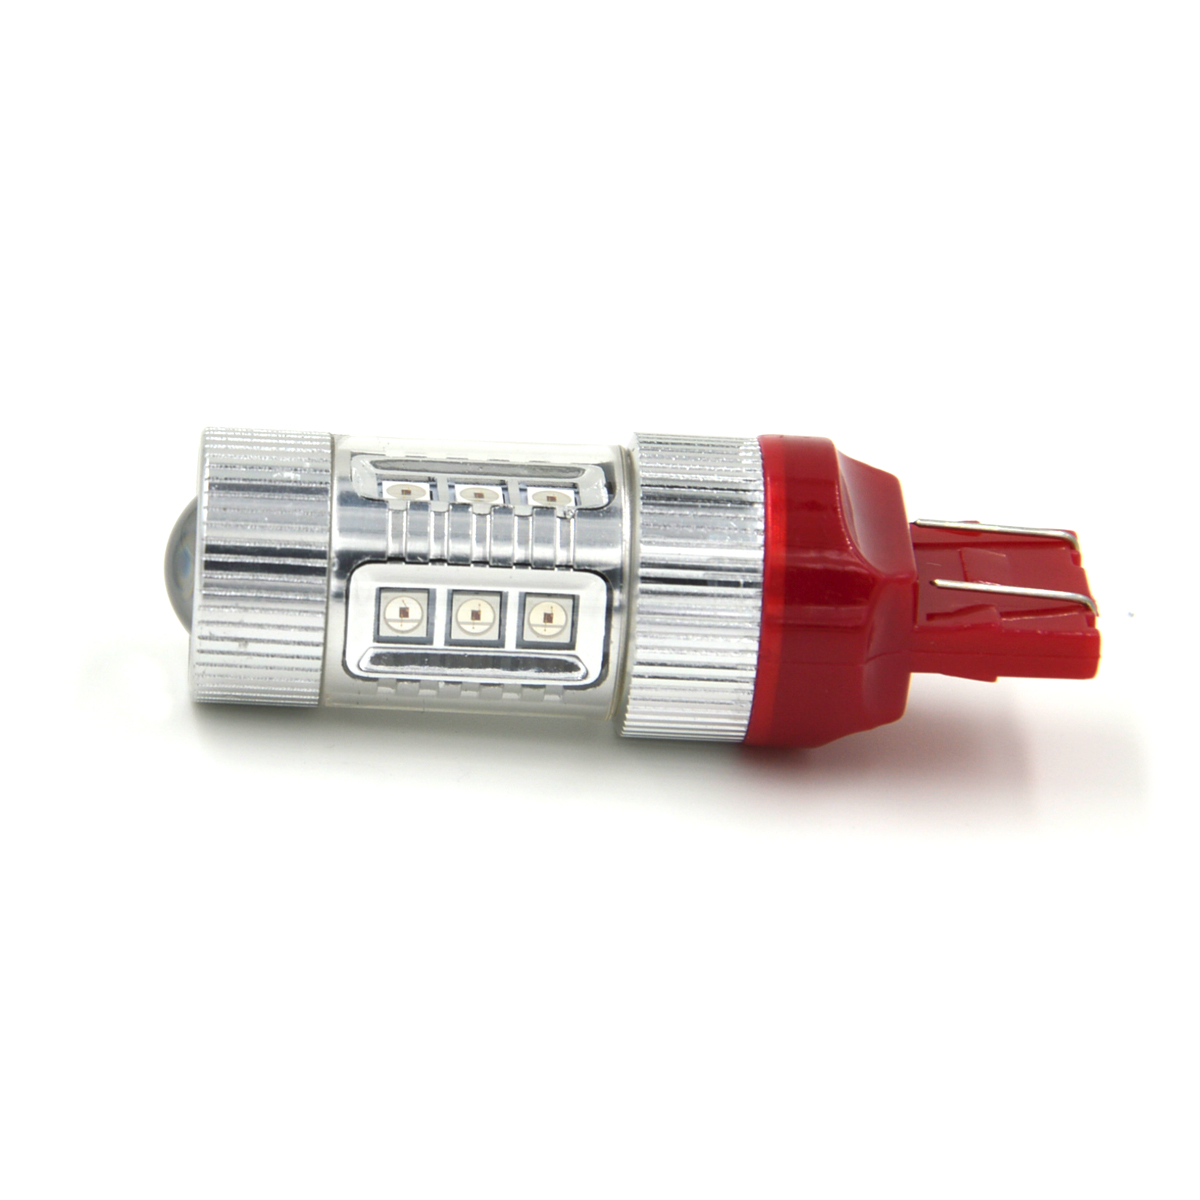 T20 /7443 DC 12-24V 80W 680LM Red LED Car Steering /Backup /Brake Light Lamp Bulbs